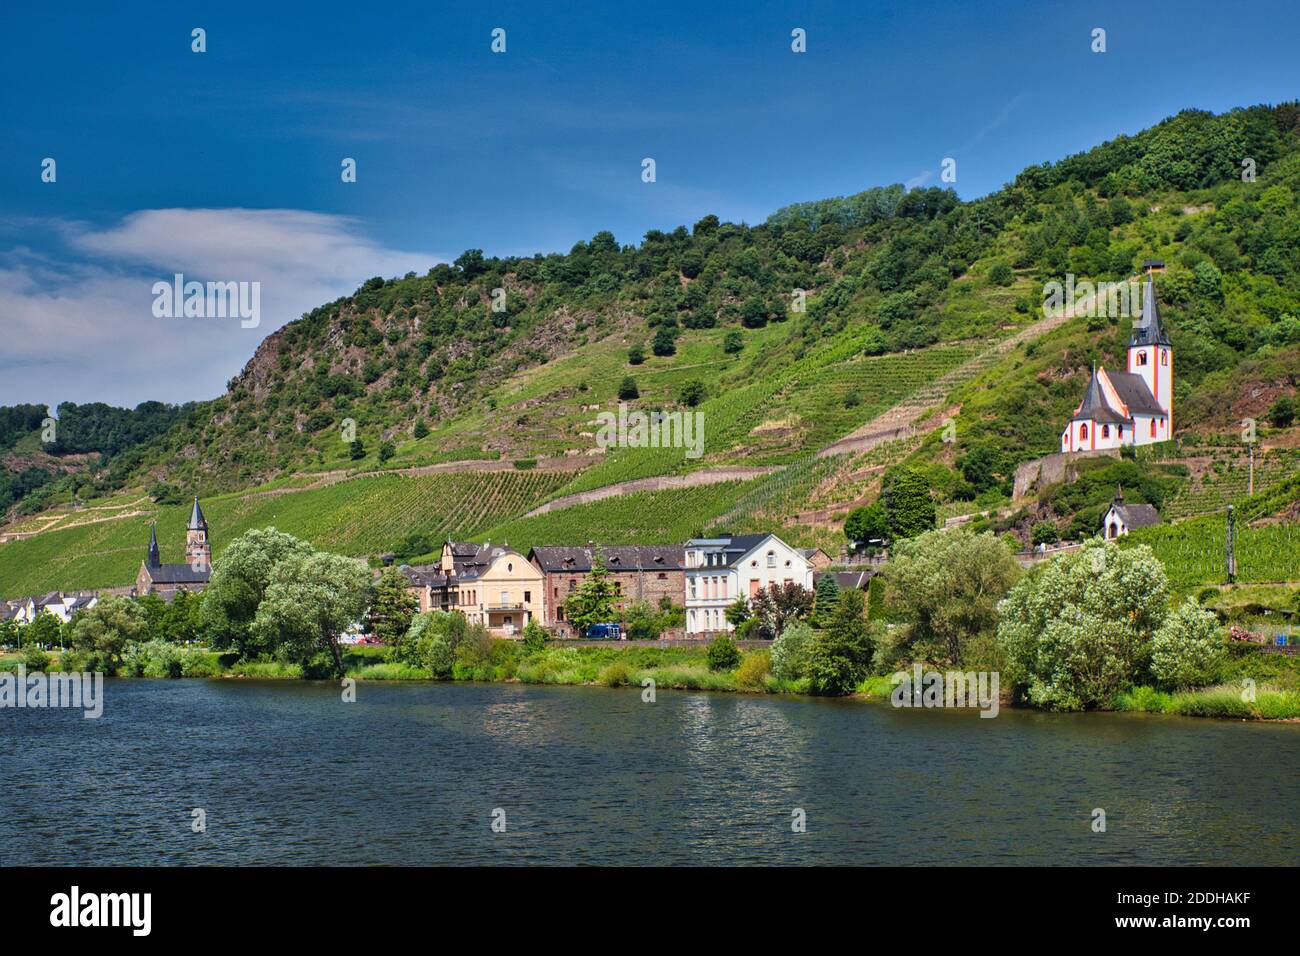 Una bella scena sul fiume Reno in Germania con case, edifici e la chiesa sulla collina sopra il villaggio. Foto Stock